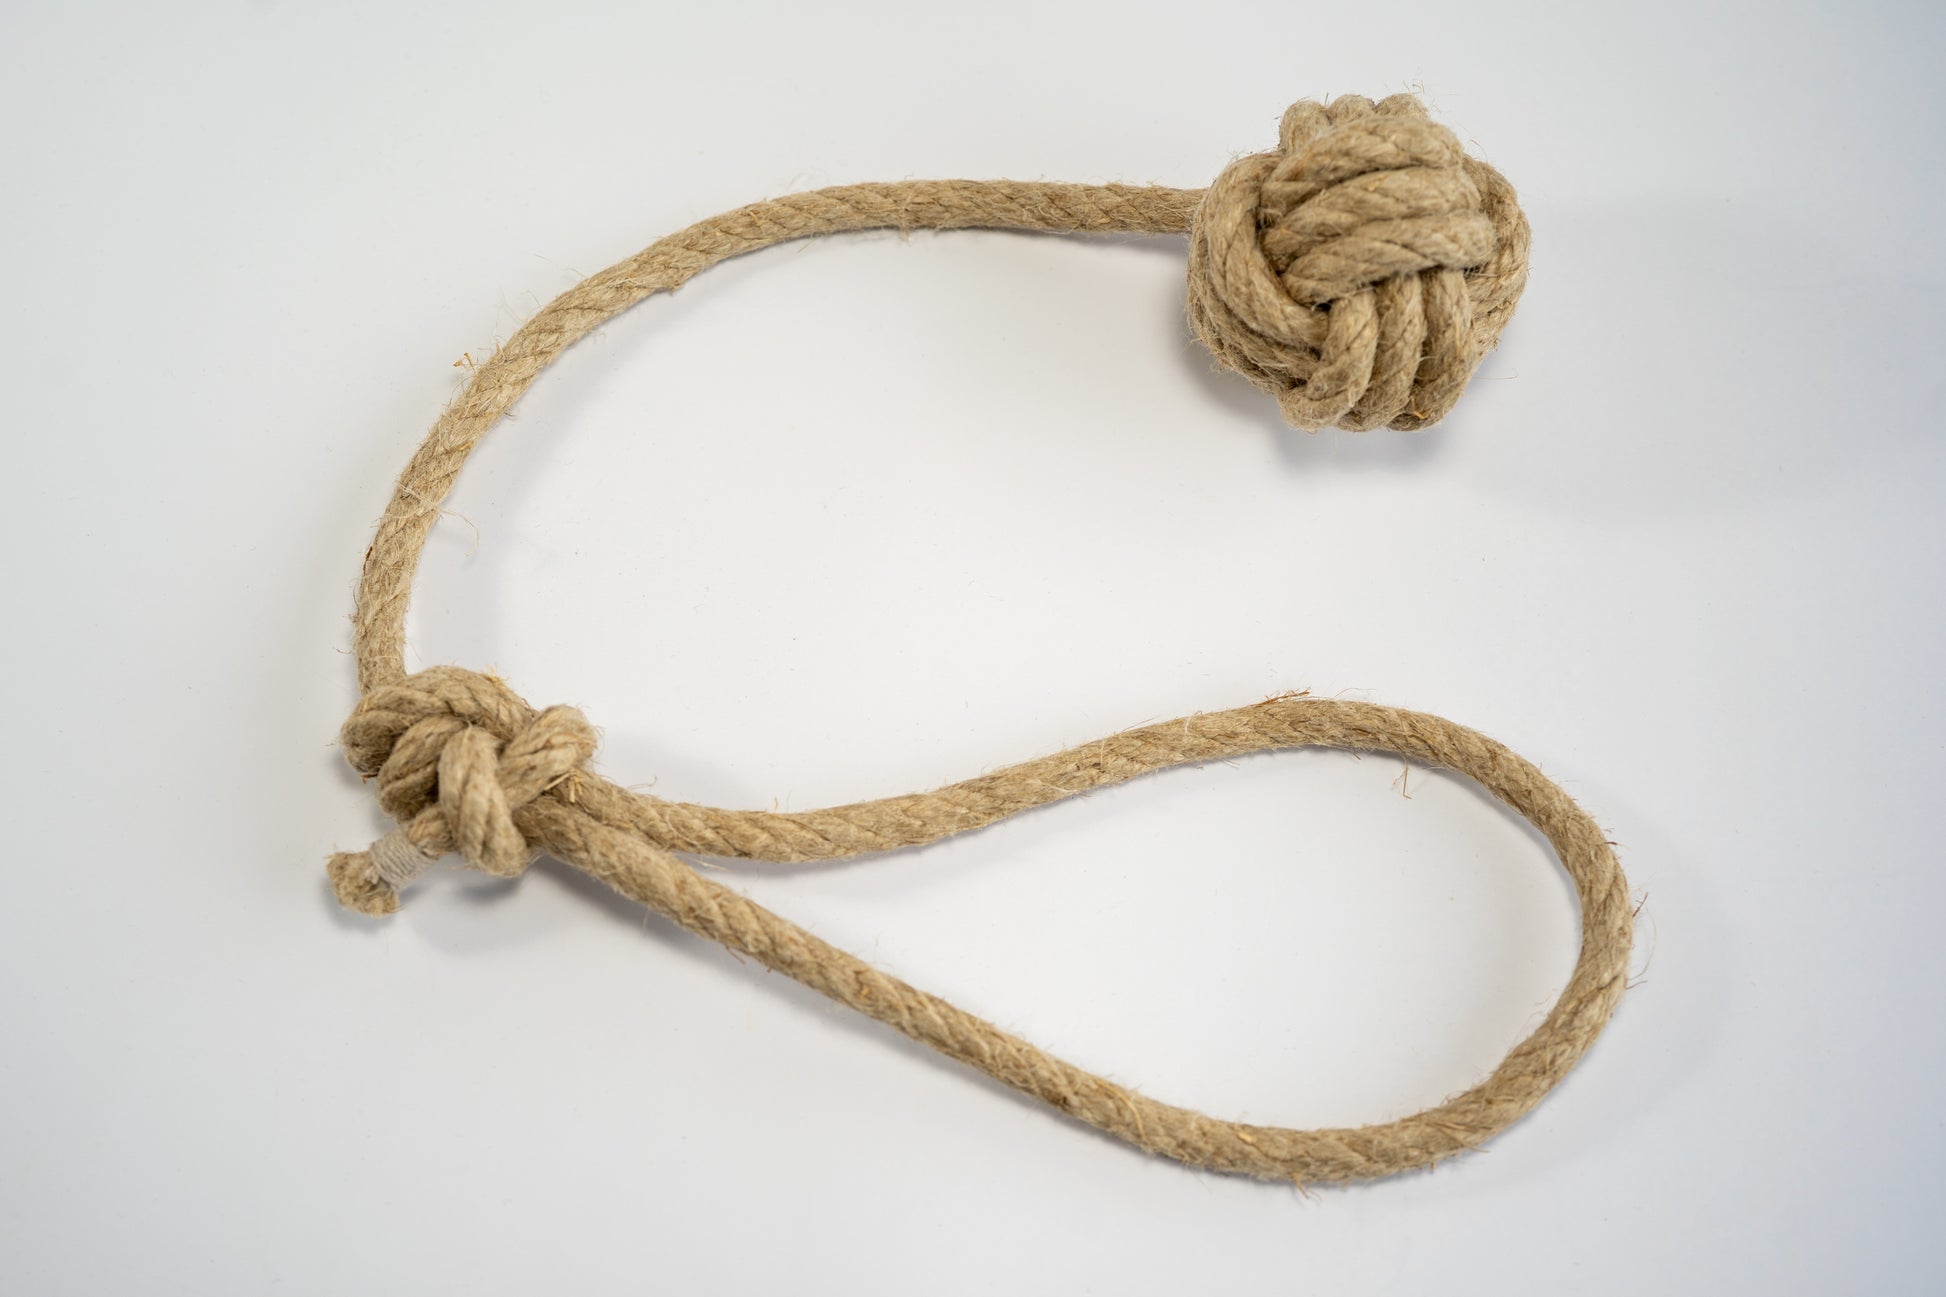 Hemp rope with medium monkey fist for dogs. | Corde de chanvre avec poing de singe de taille moyenne pour chiens.